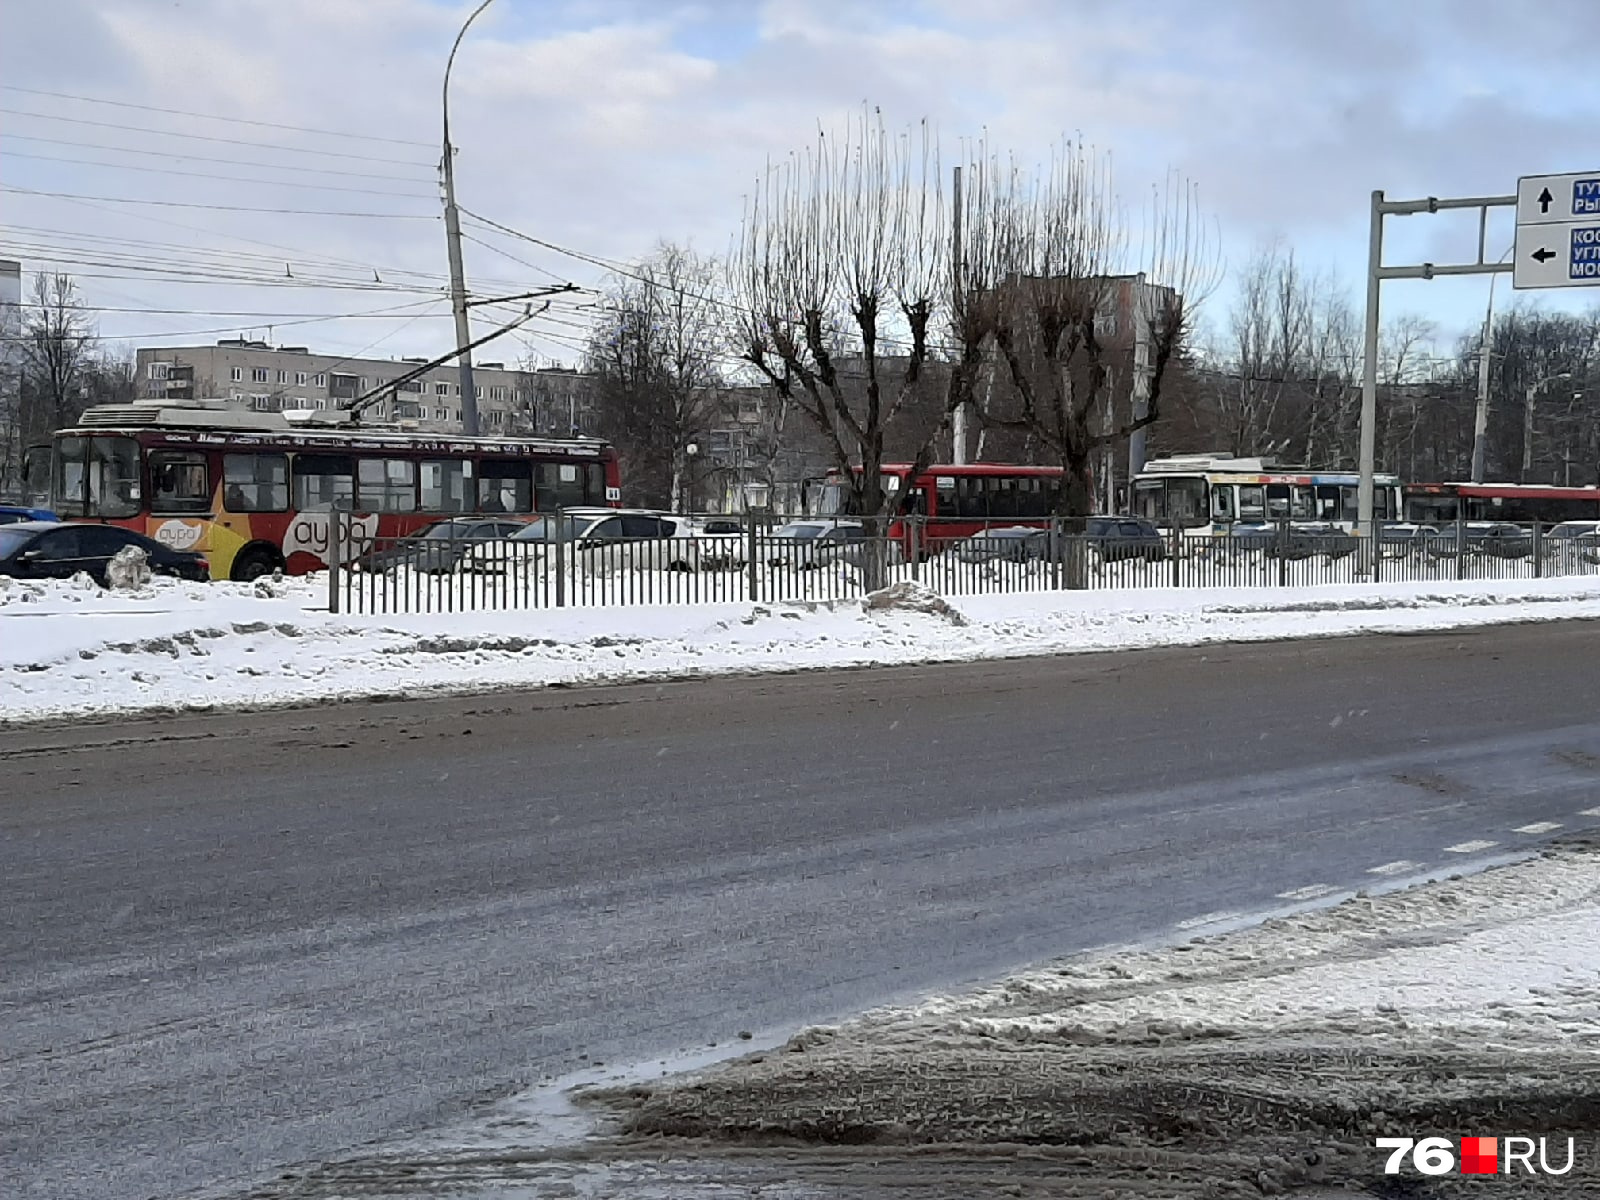 Транспорт поворачивает с проспекта Дзержинского, вливаясь в общий поток, который становится еще медленнее